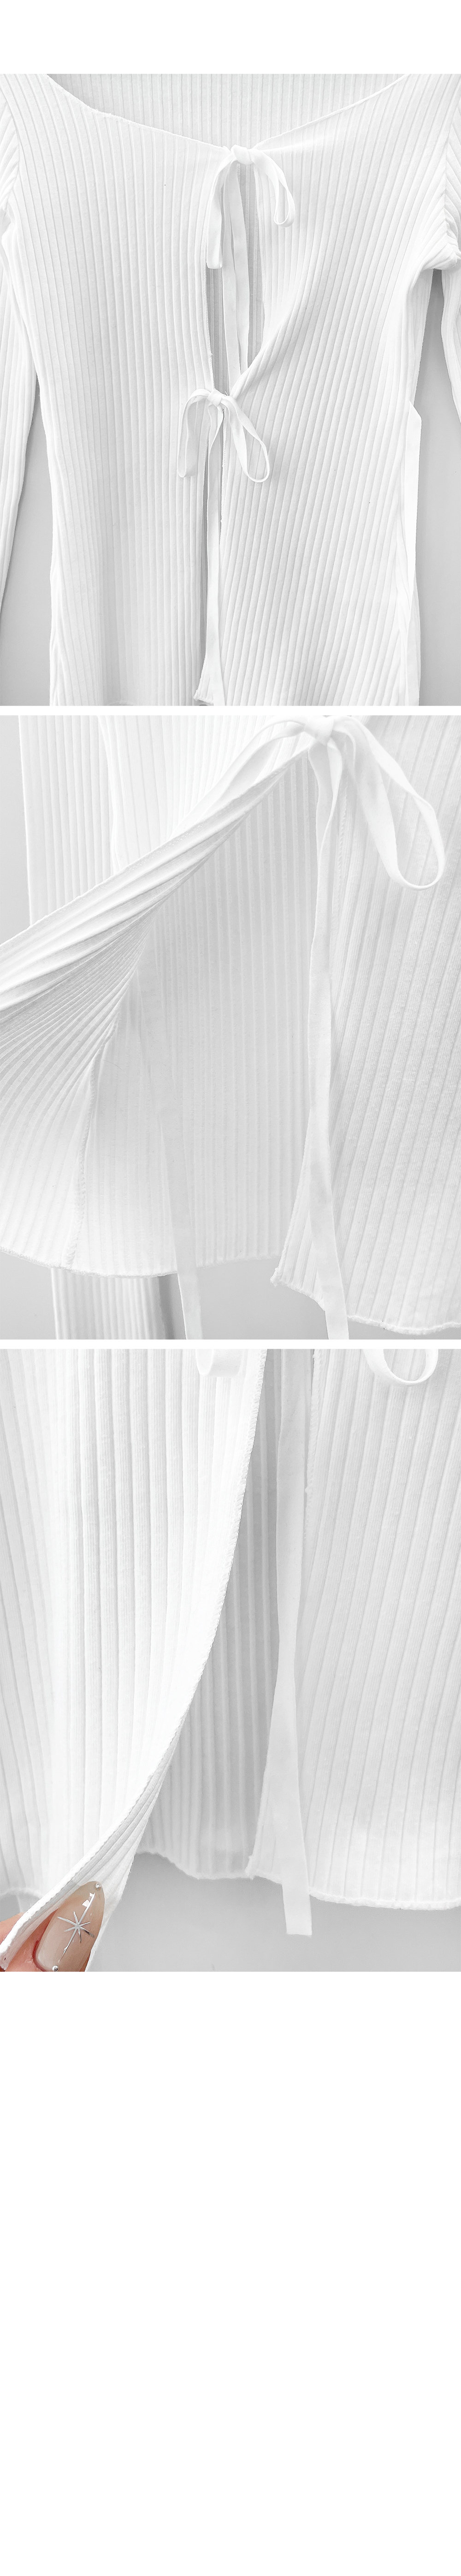 blouse detail image-S1L11